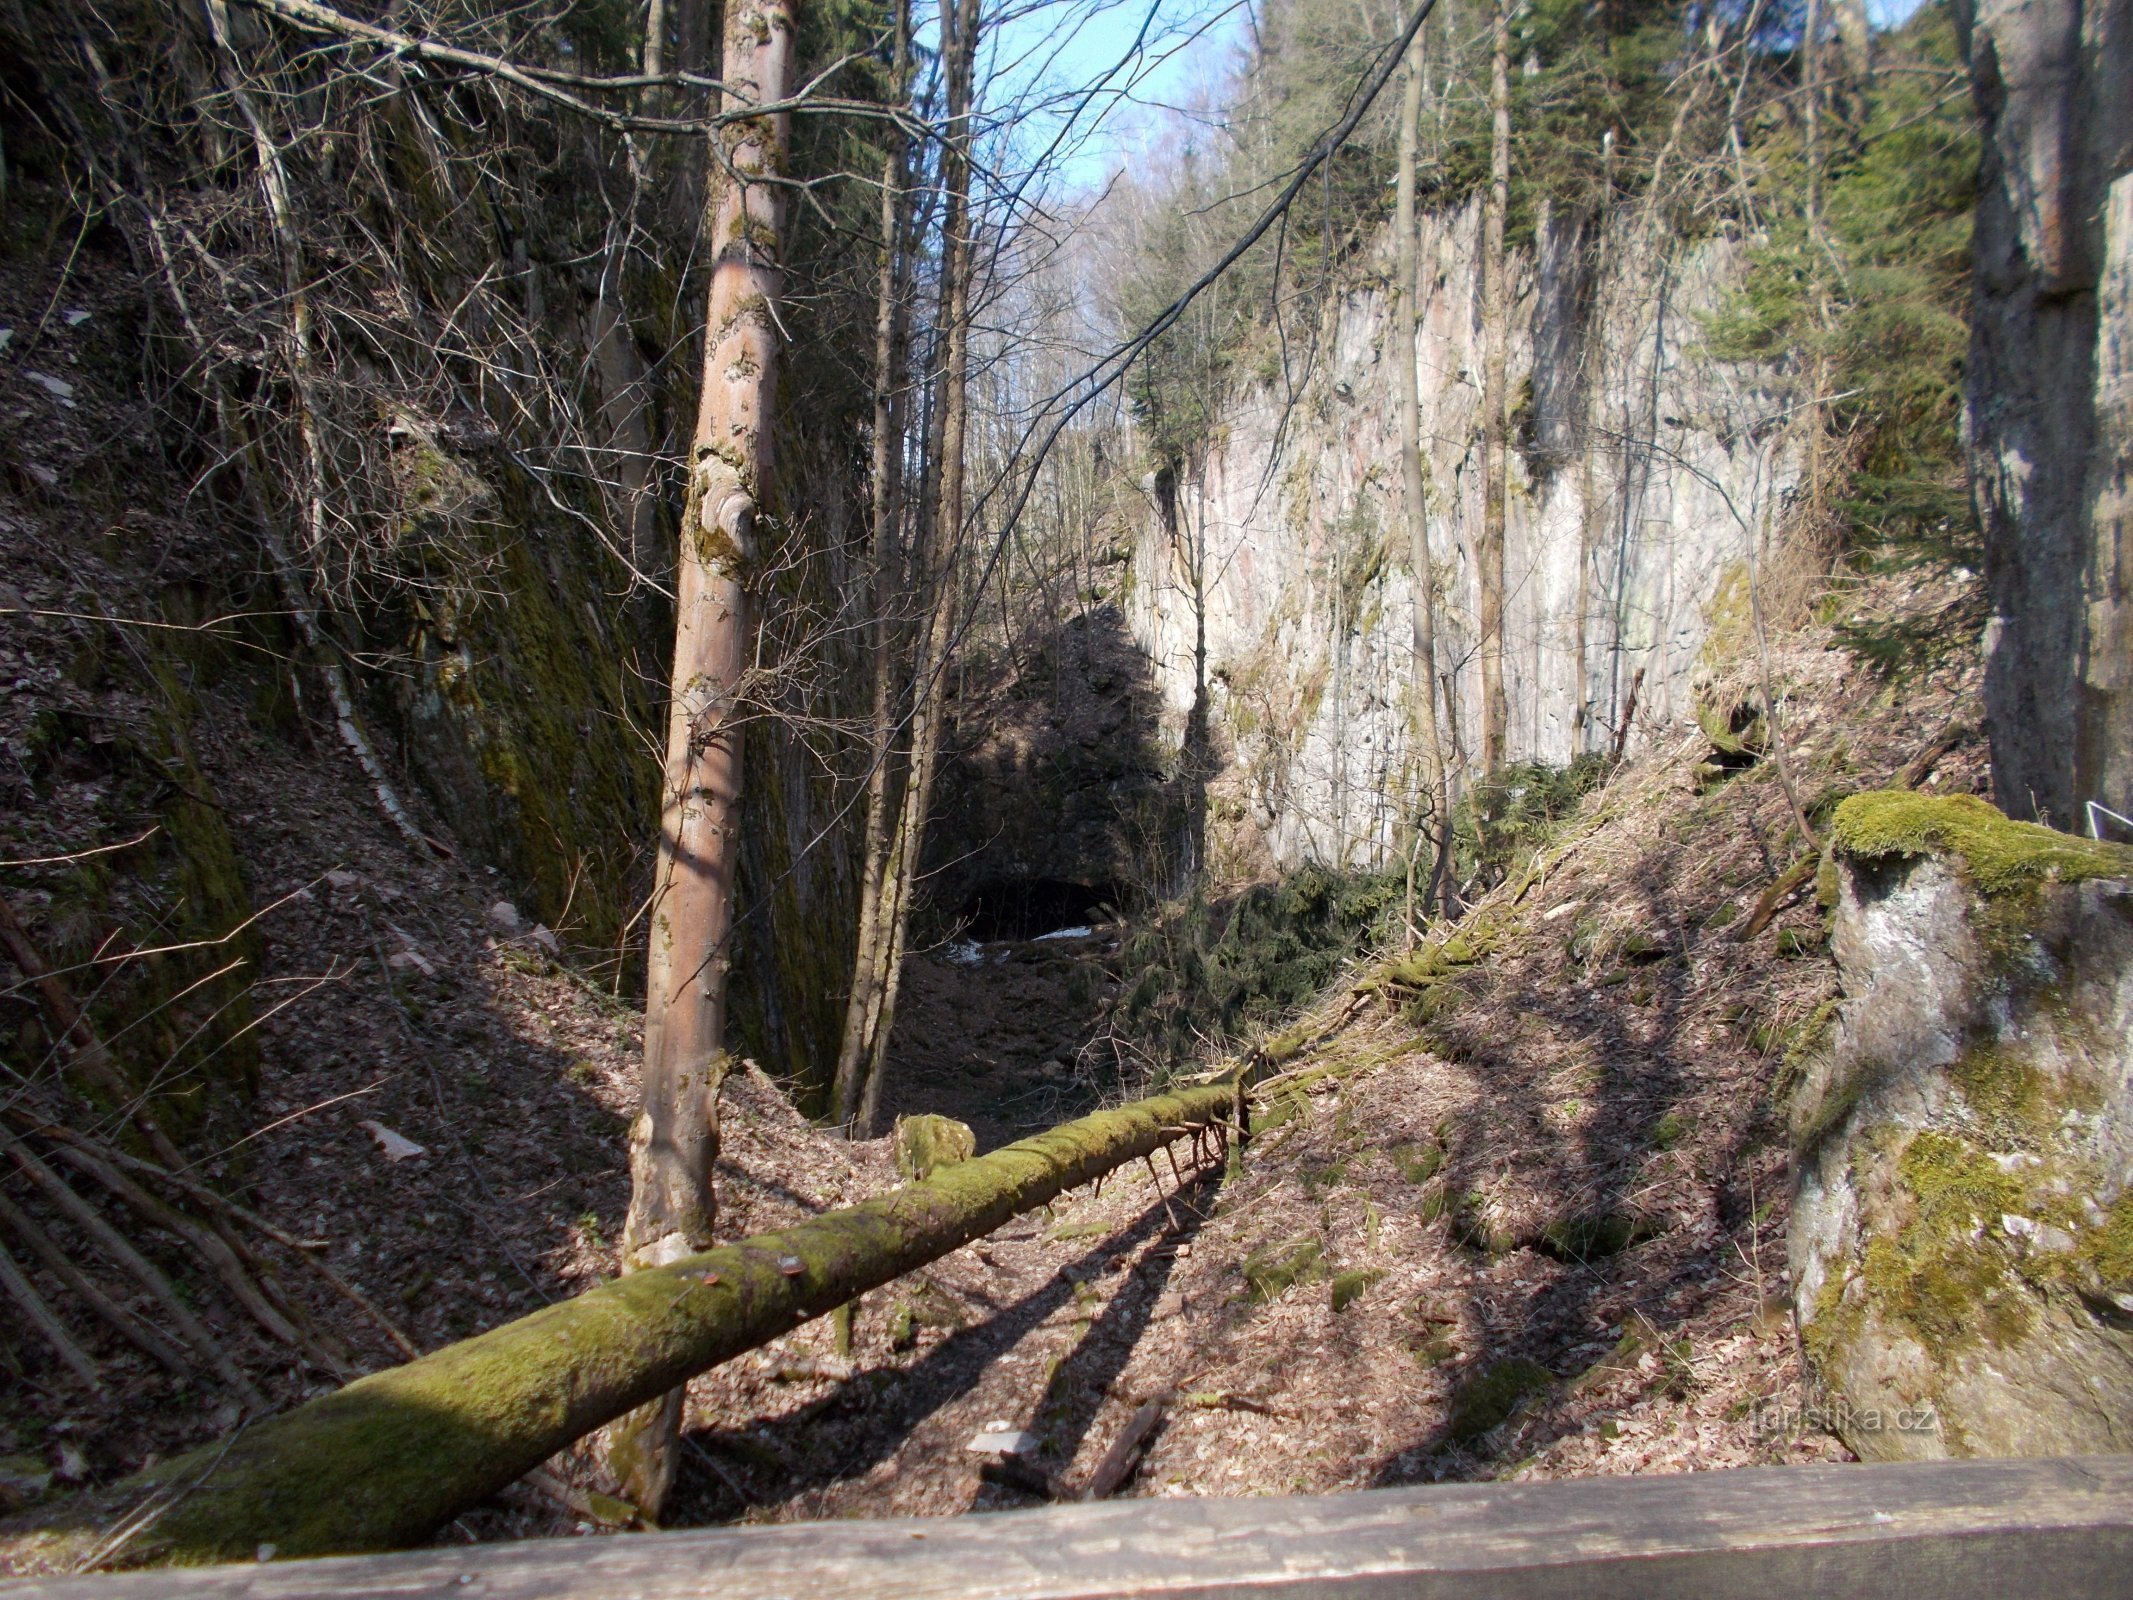 ビショフの採石場、その端にアルベジツカ ジェスキナーへの入り口